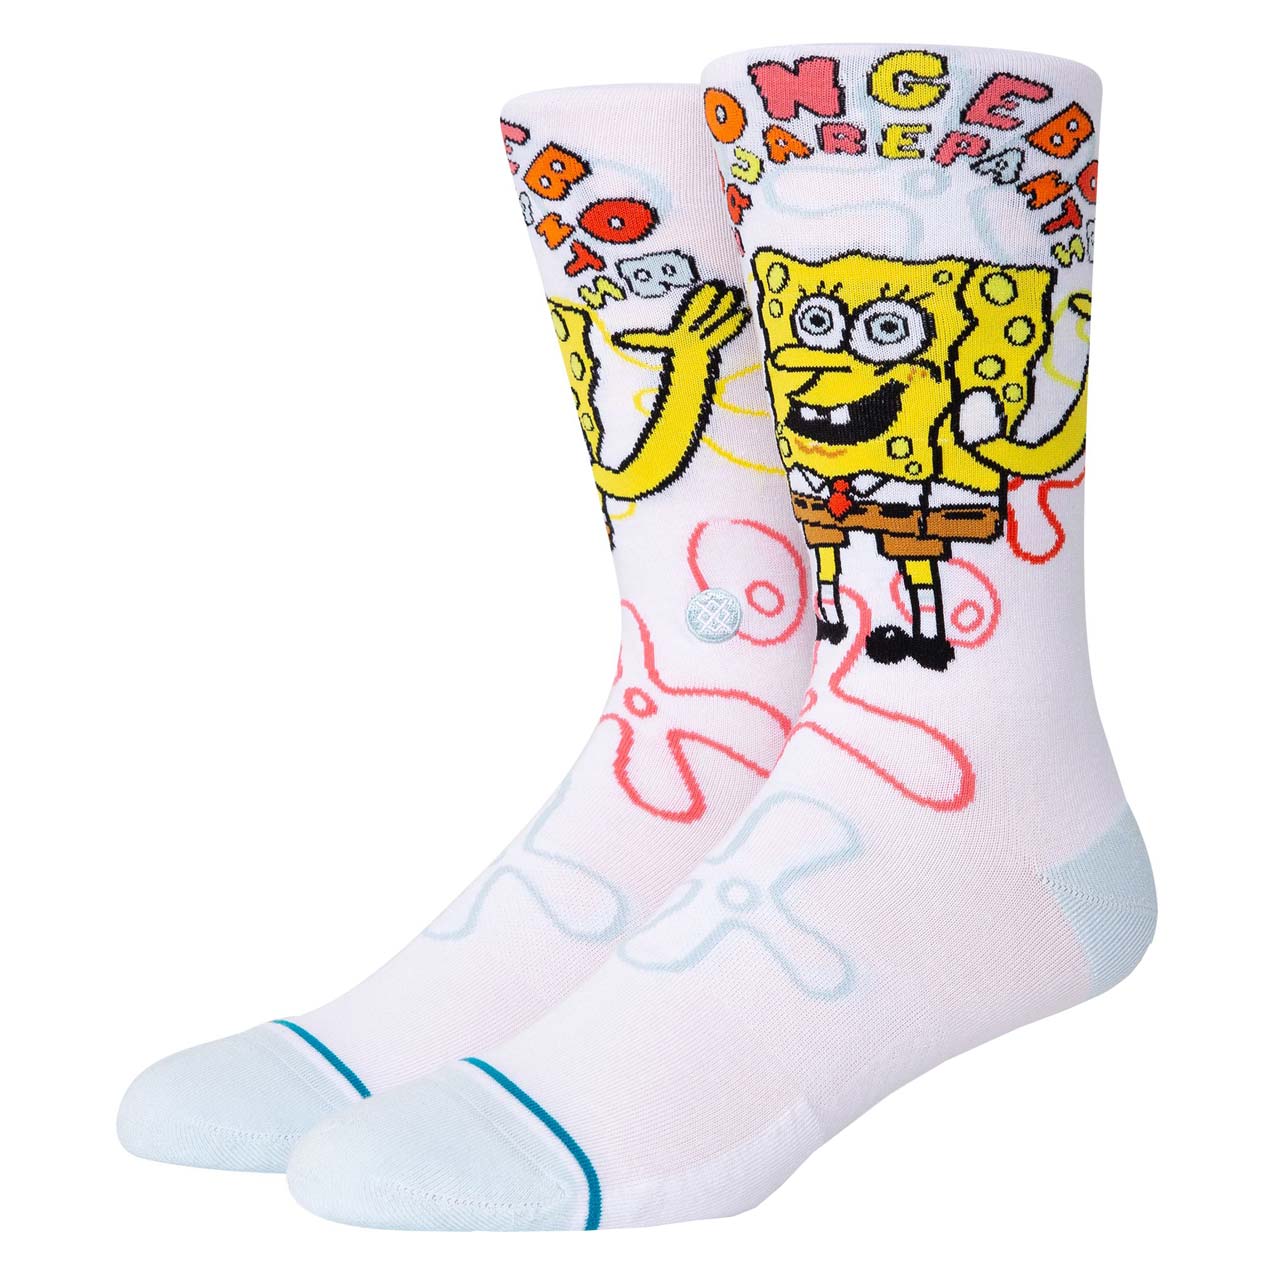 Socken Spongebob Imagination Bob